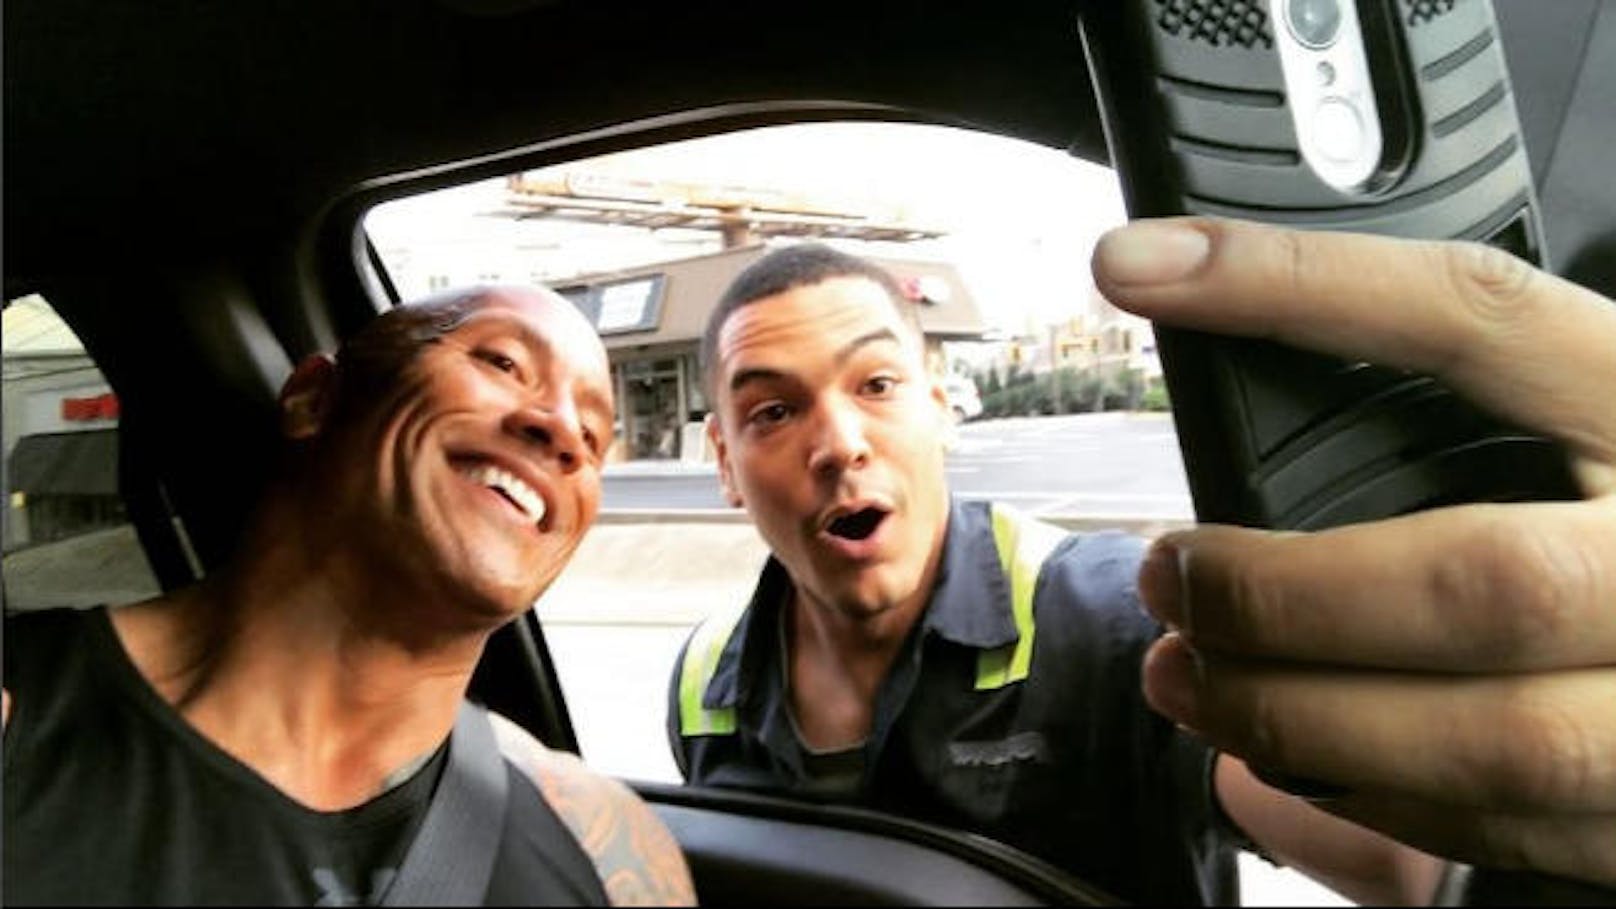 23.06.2017: Dwayne Johnson postete ein Video von sich mit einem Fan. Als er mit seinem Wagen am Nachhauseweg war, stoppte der Typ, um ein Selfie mit seinem grten Idol zu machen - und legte dabei mal eben den Verkehr lahm und riskierte dabei sogar sein Leben. "Thanks dude for making my day", schreibt The Rock zum Video.